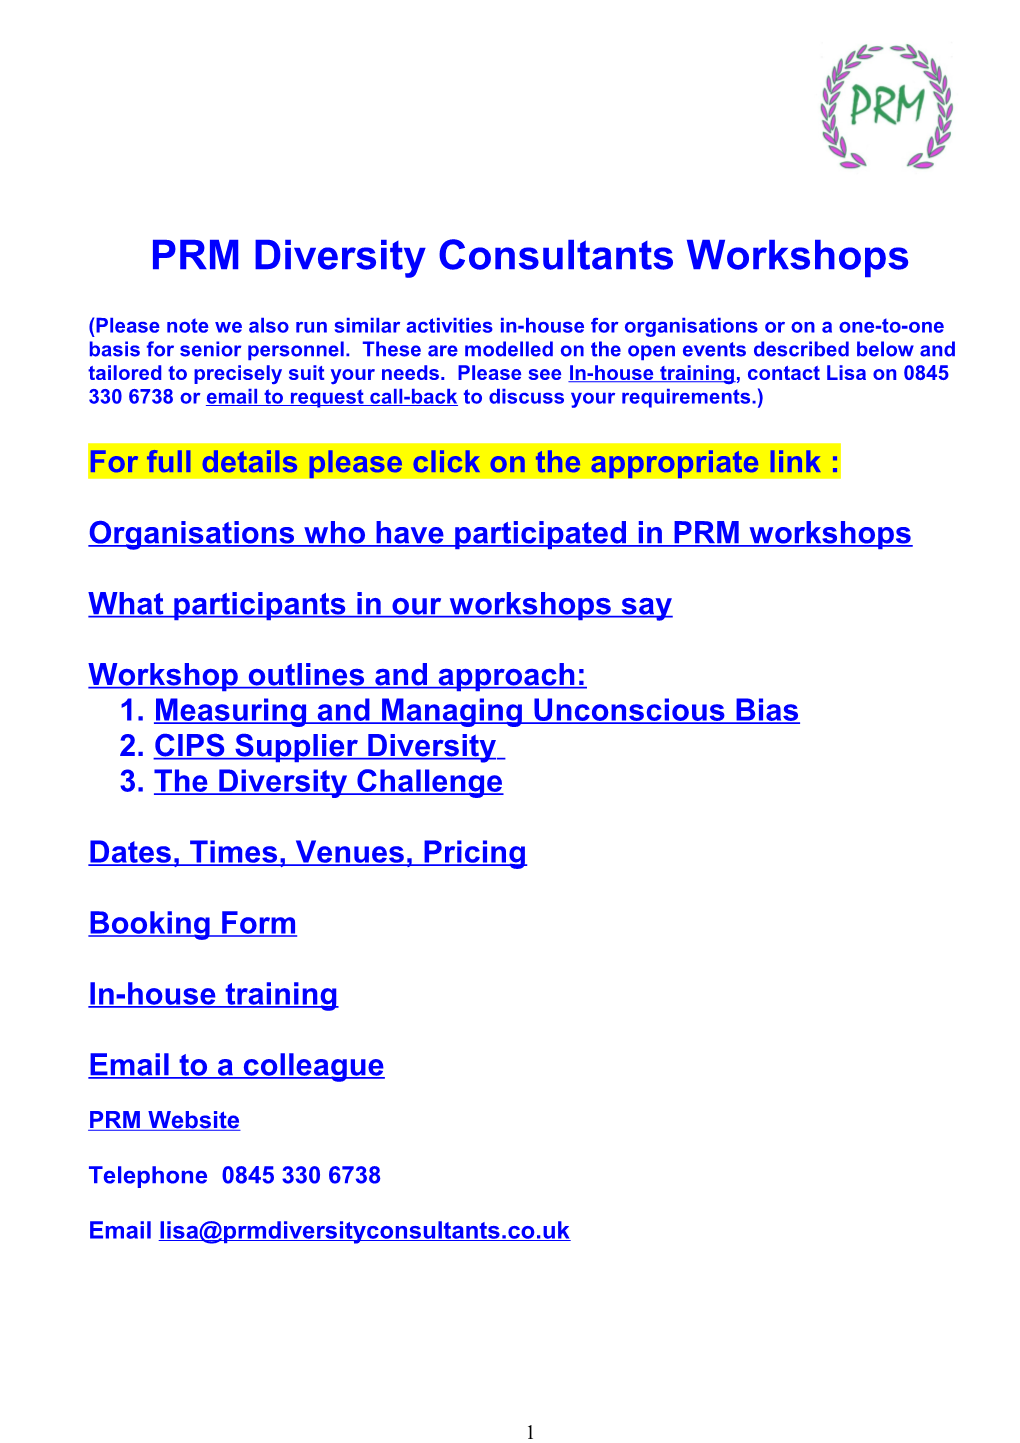 PRM Diversity Services